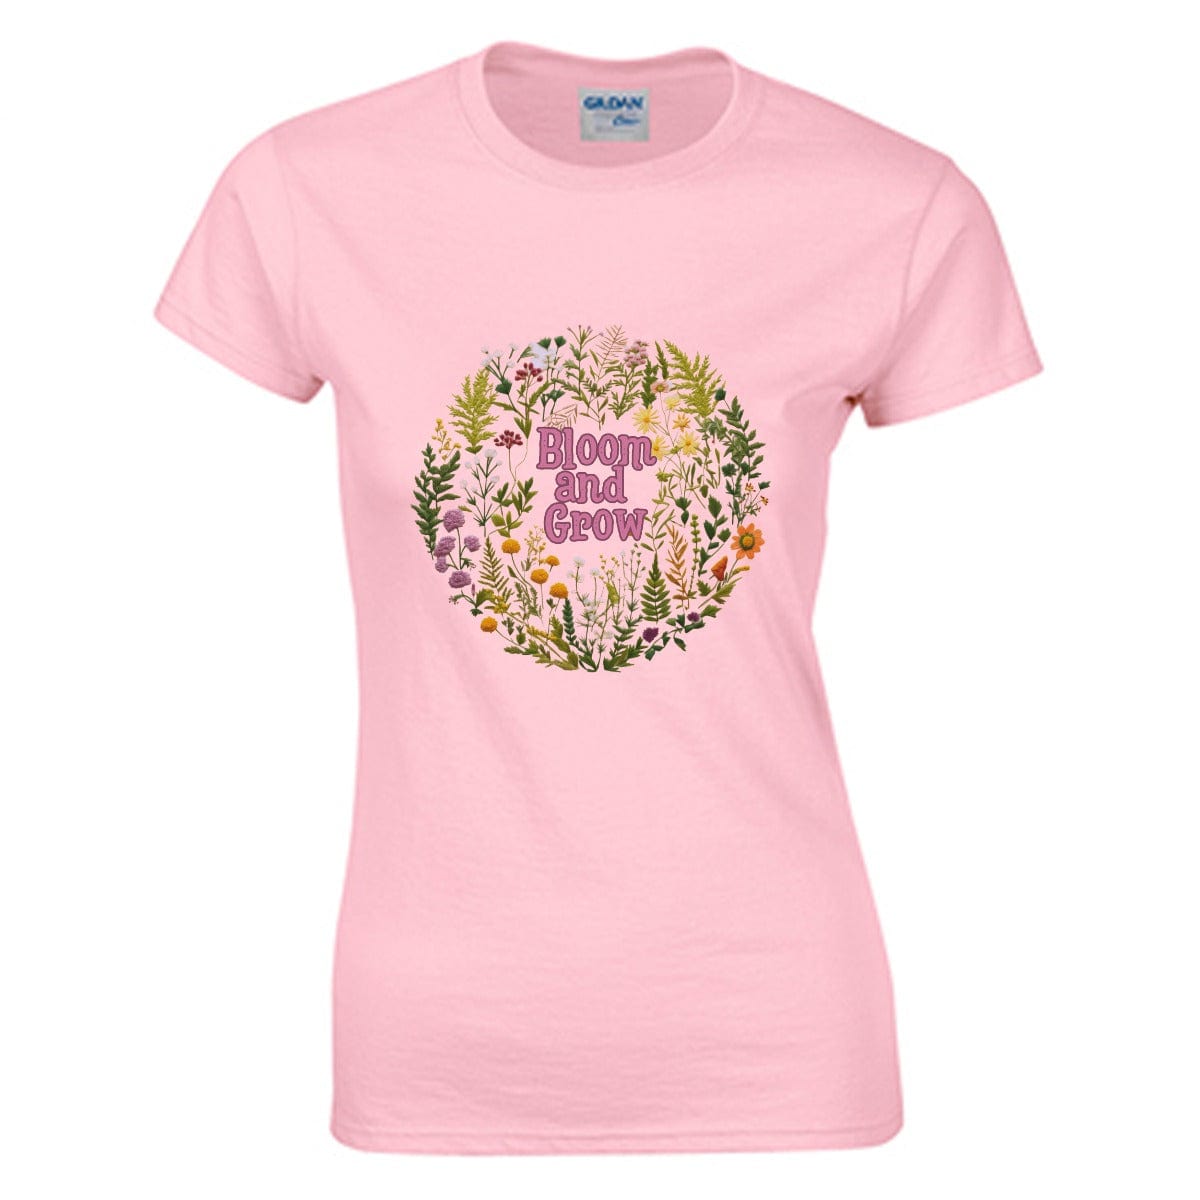 Yoycol Bloom and Grow T-shirt | Gildan 180GSM Cotton (DTG)